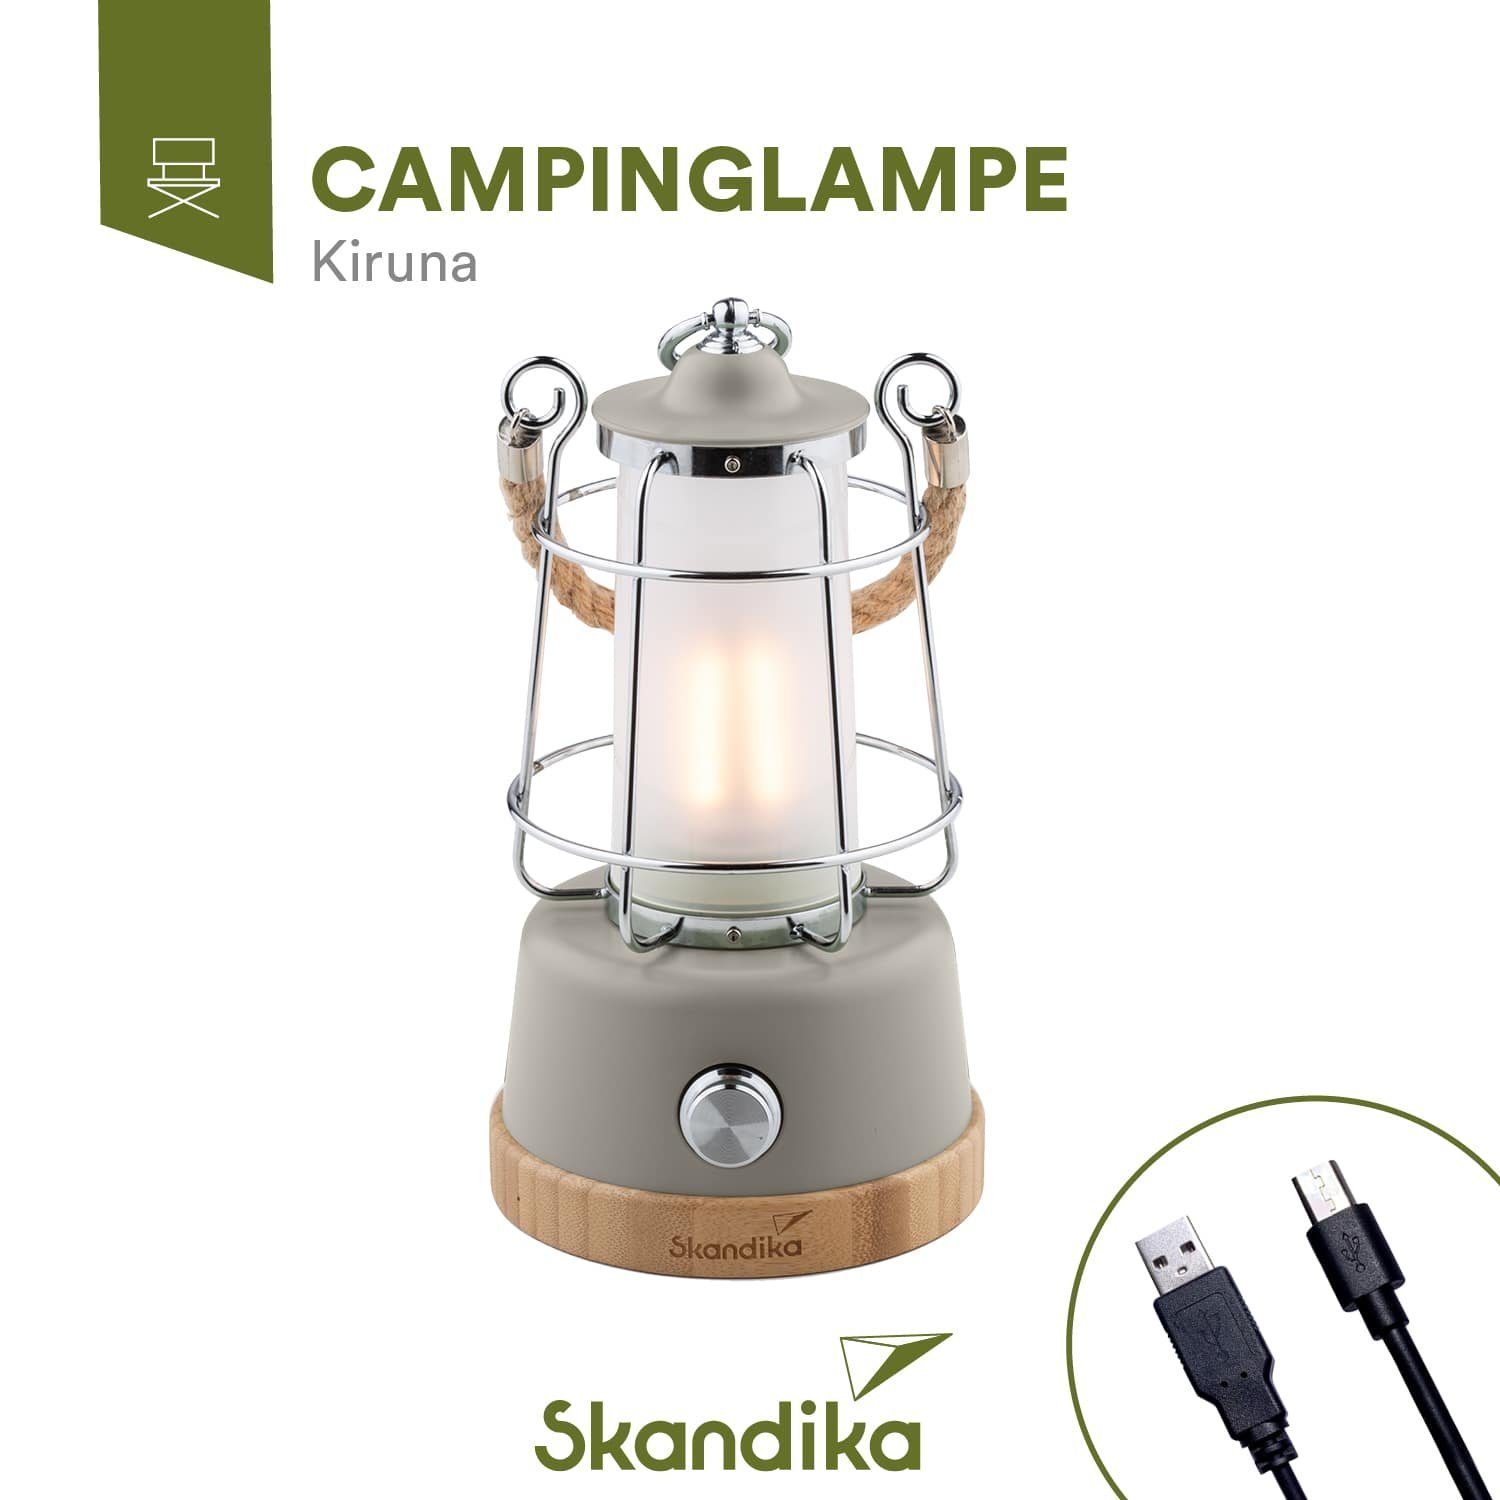 mit Skandika mAh, LED mit Campinglampe Kiruna, Powerbank, Campinglampe 5000 stufenlos dimmbar Gartenleuchte Powerbank